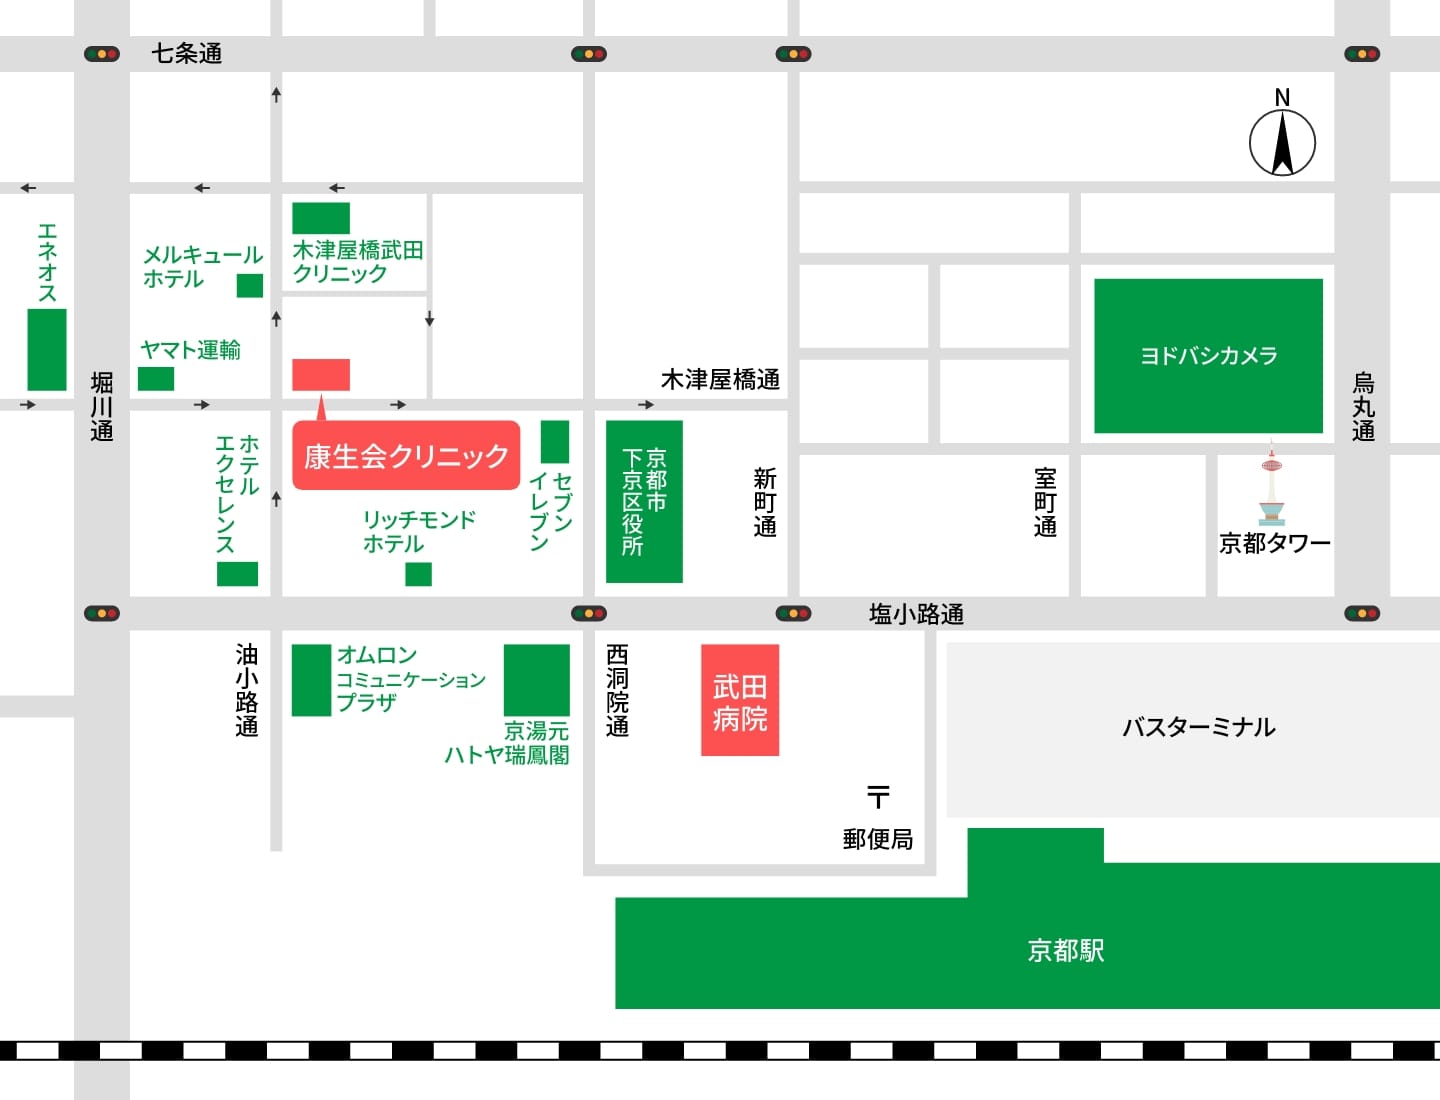 康生会クリニックと武田病院は徒歩5分の距離を示した地図